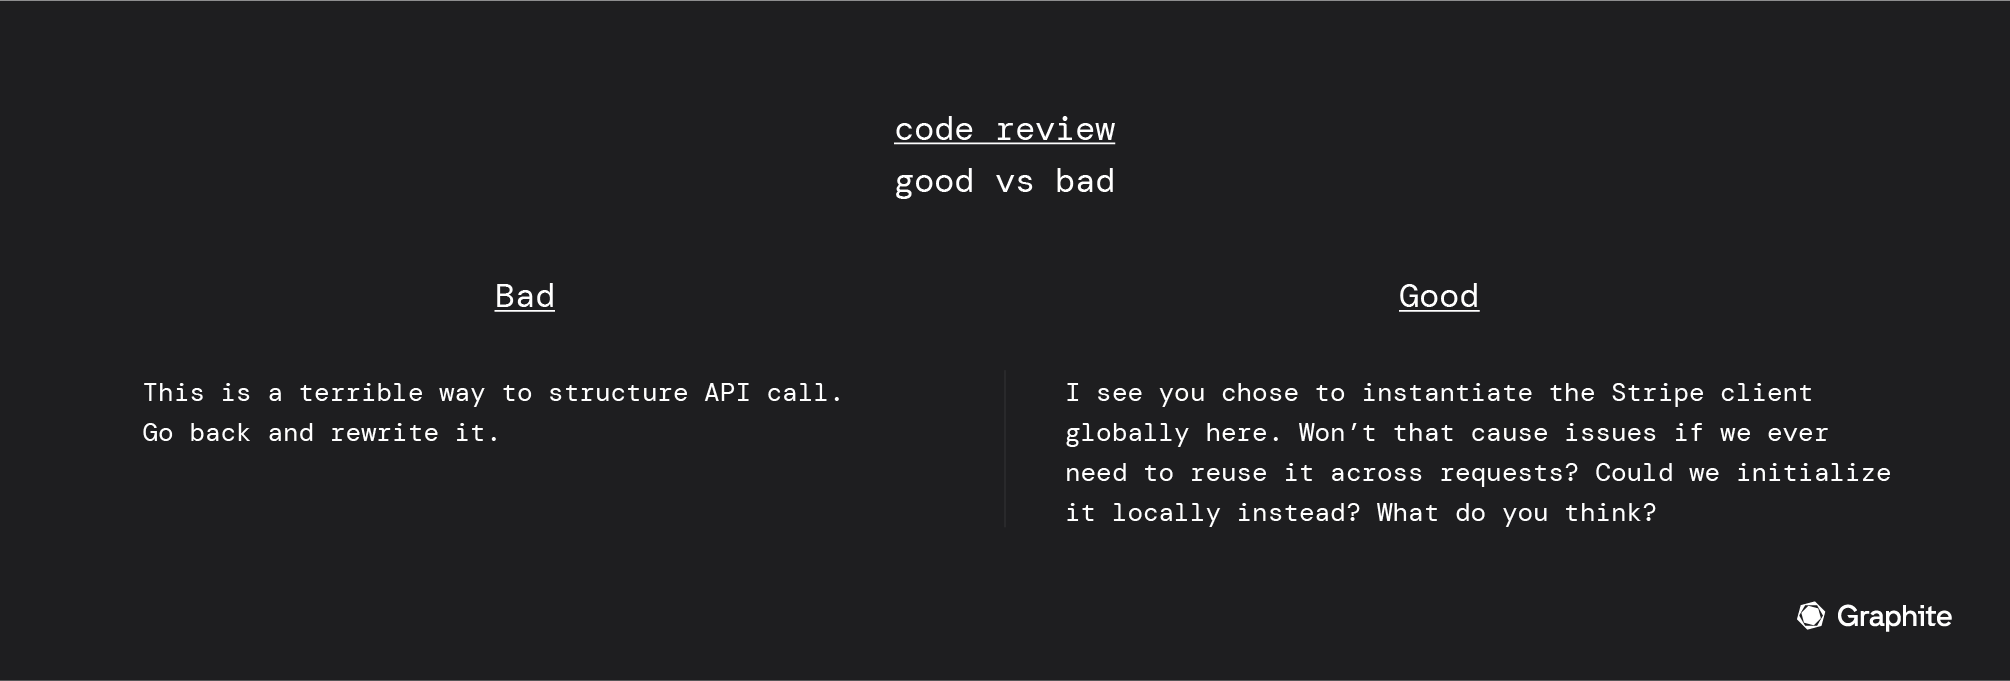 code review. good vs bad